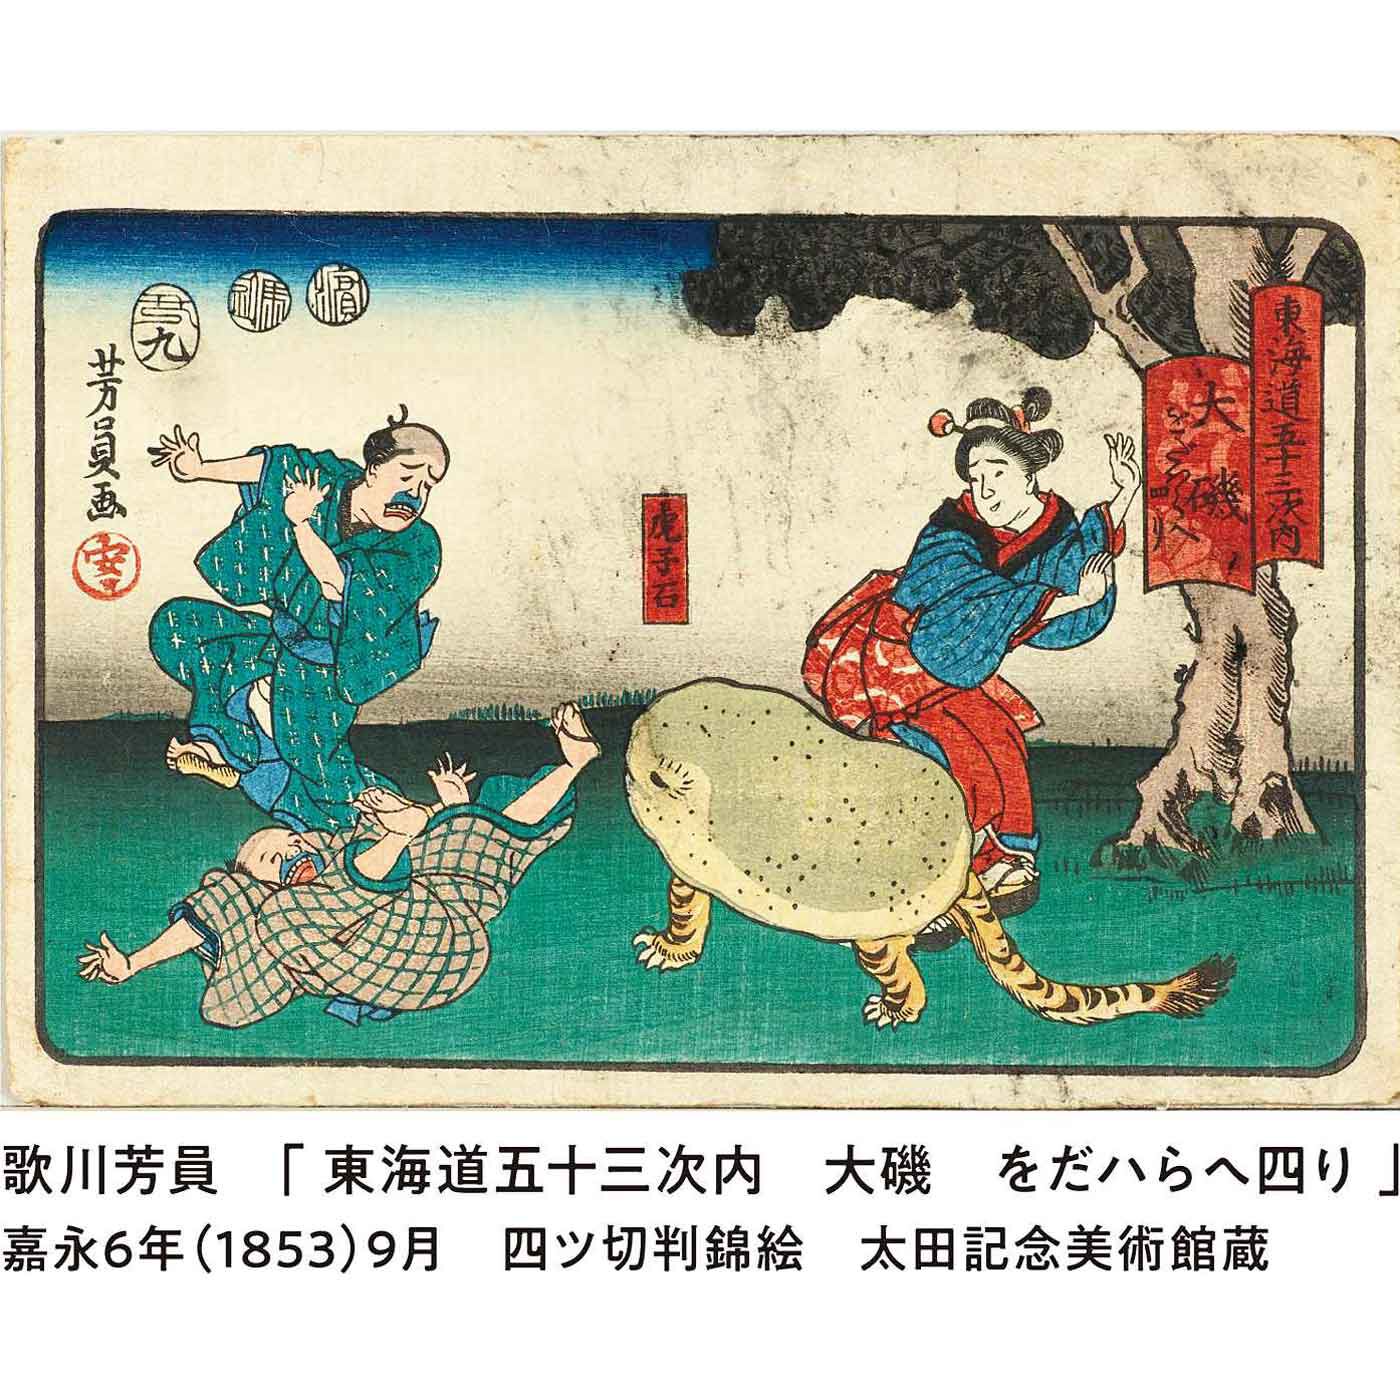 太田記念美術館×ミュージアム部 絵師のユーモアが生んだ珍獣 虎子石